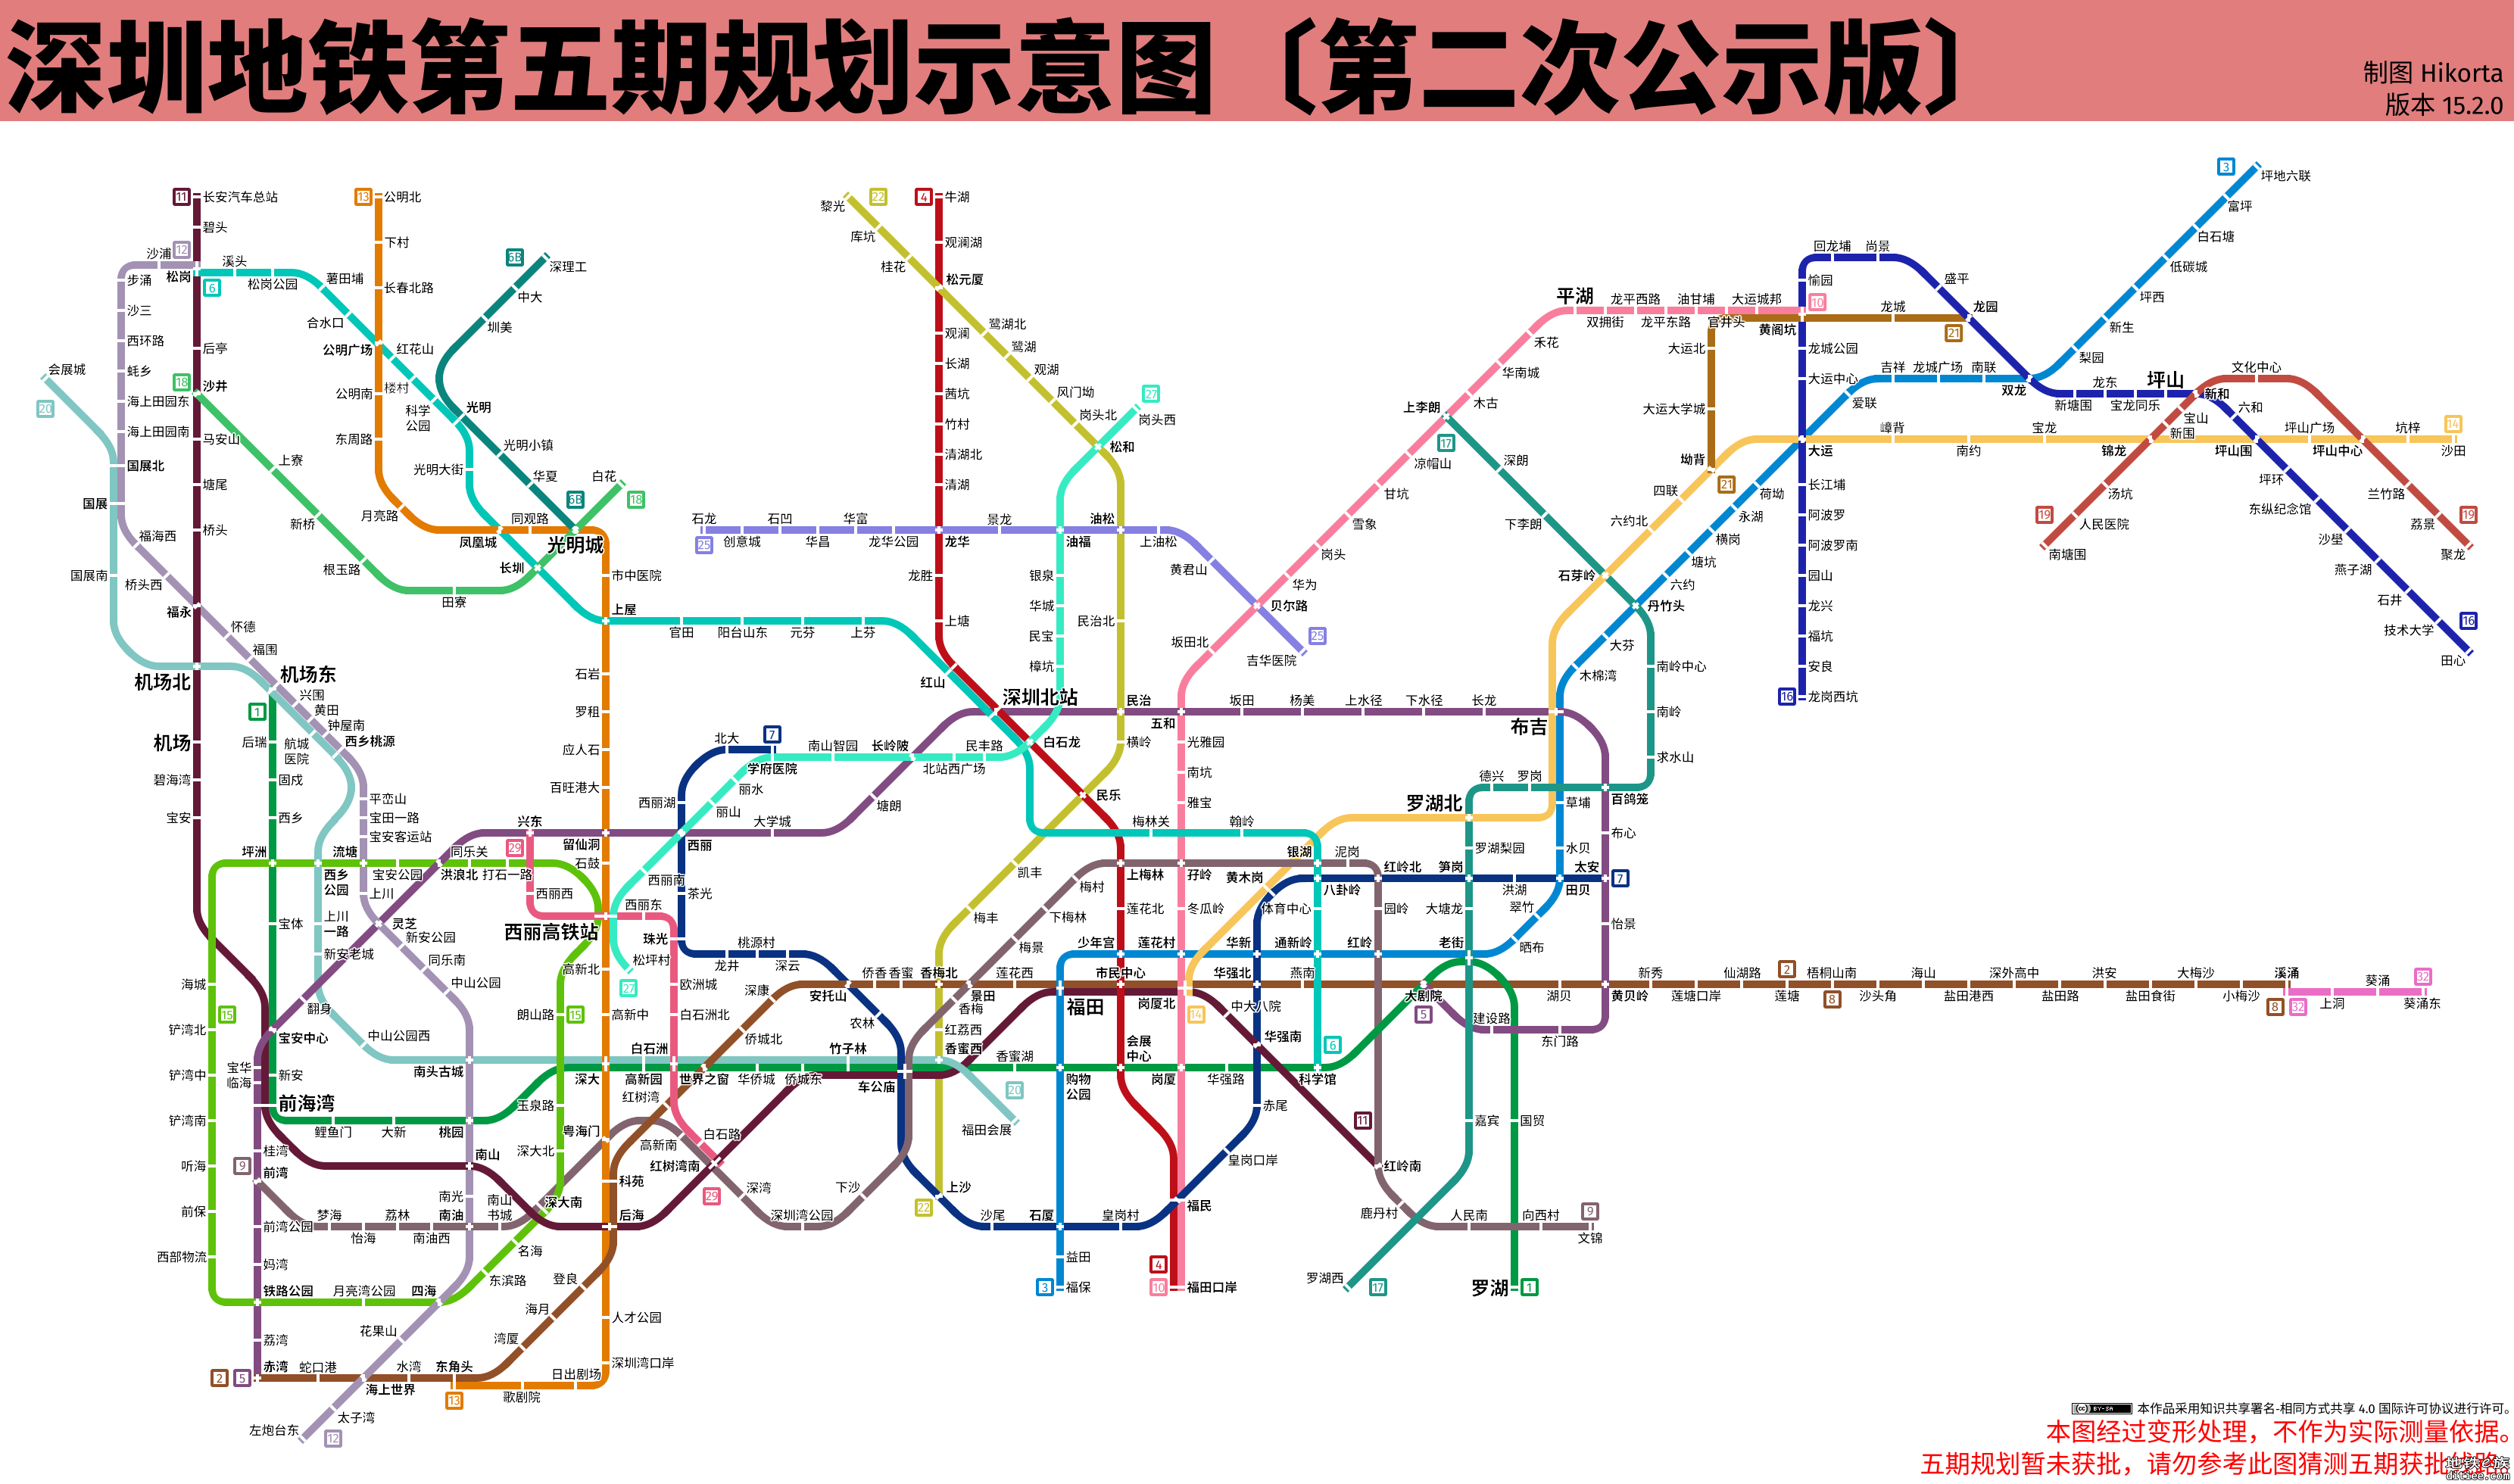 【皮鸭制图】深圳地铁第五期规划示意图第二次公示版